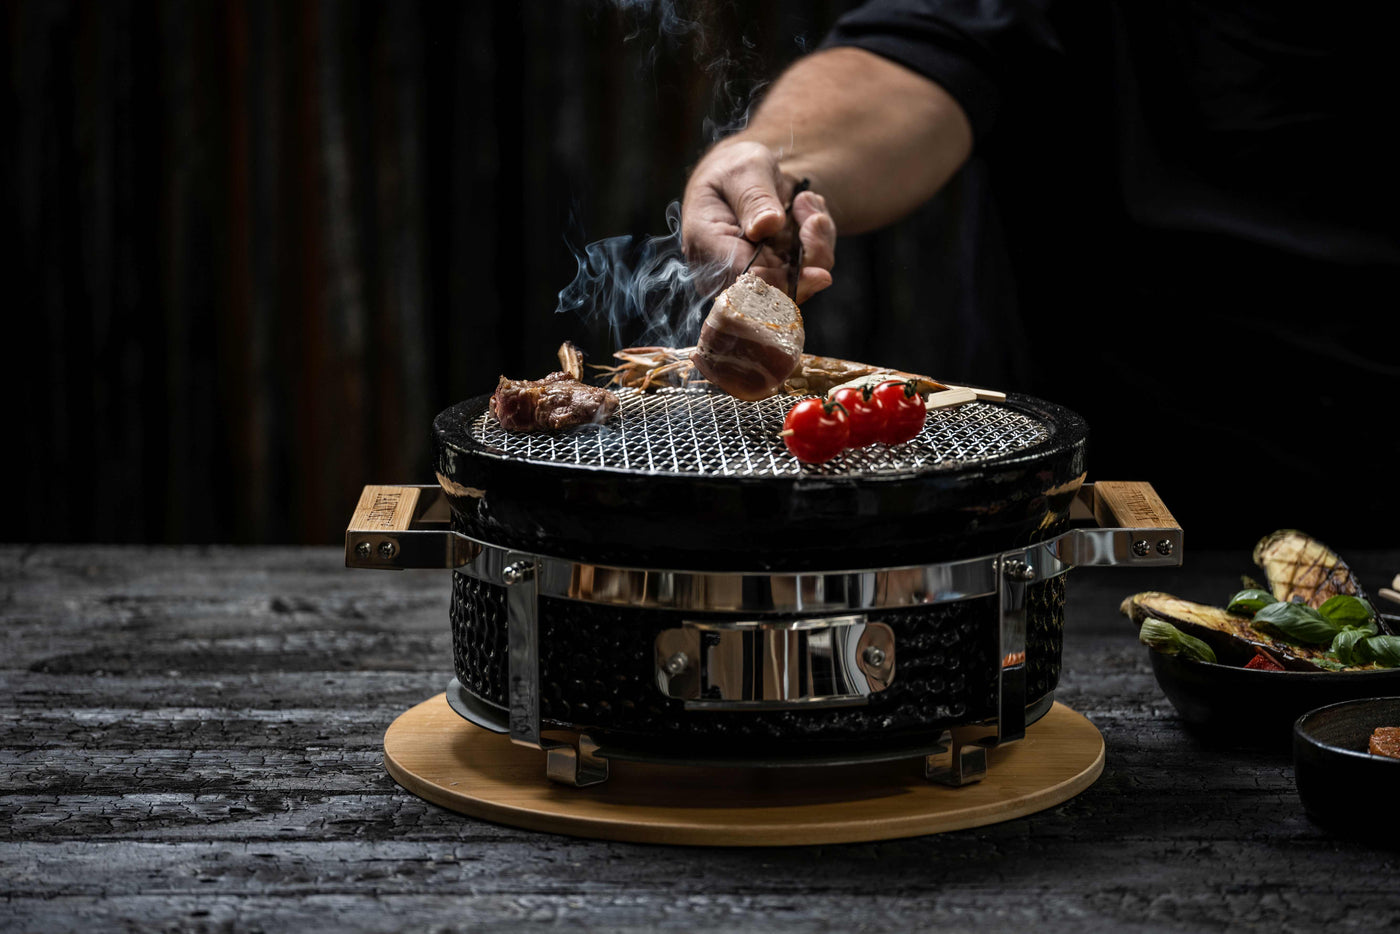 Shichirin: Echte Japanische Grill-Tradition